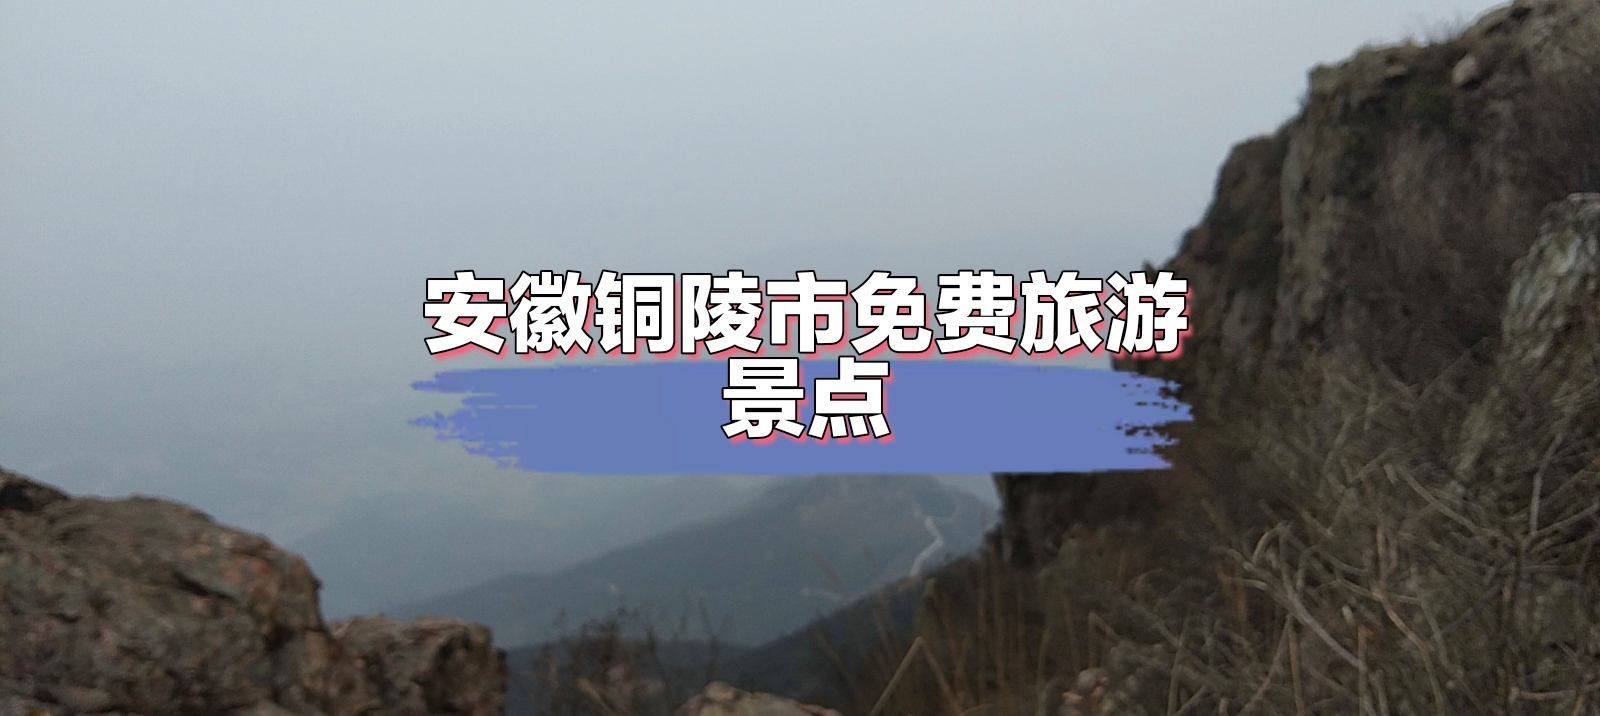 #爬山看风景 #爬山的最佳地点 #玩转户外  海拔1000米，位于安徽省铜陵市枞阳县三公山。不需要买